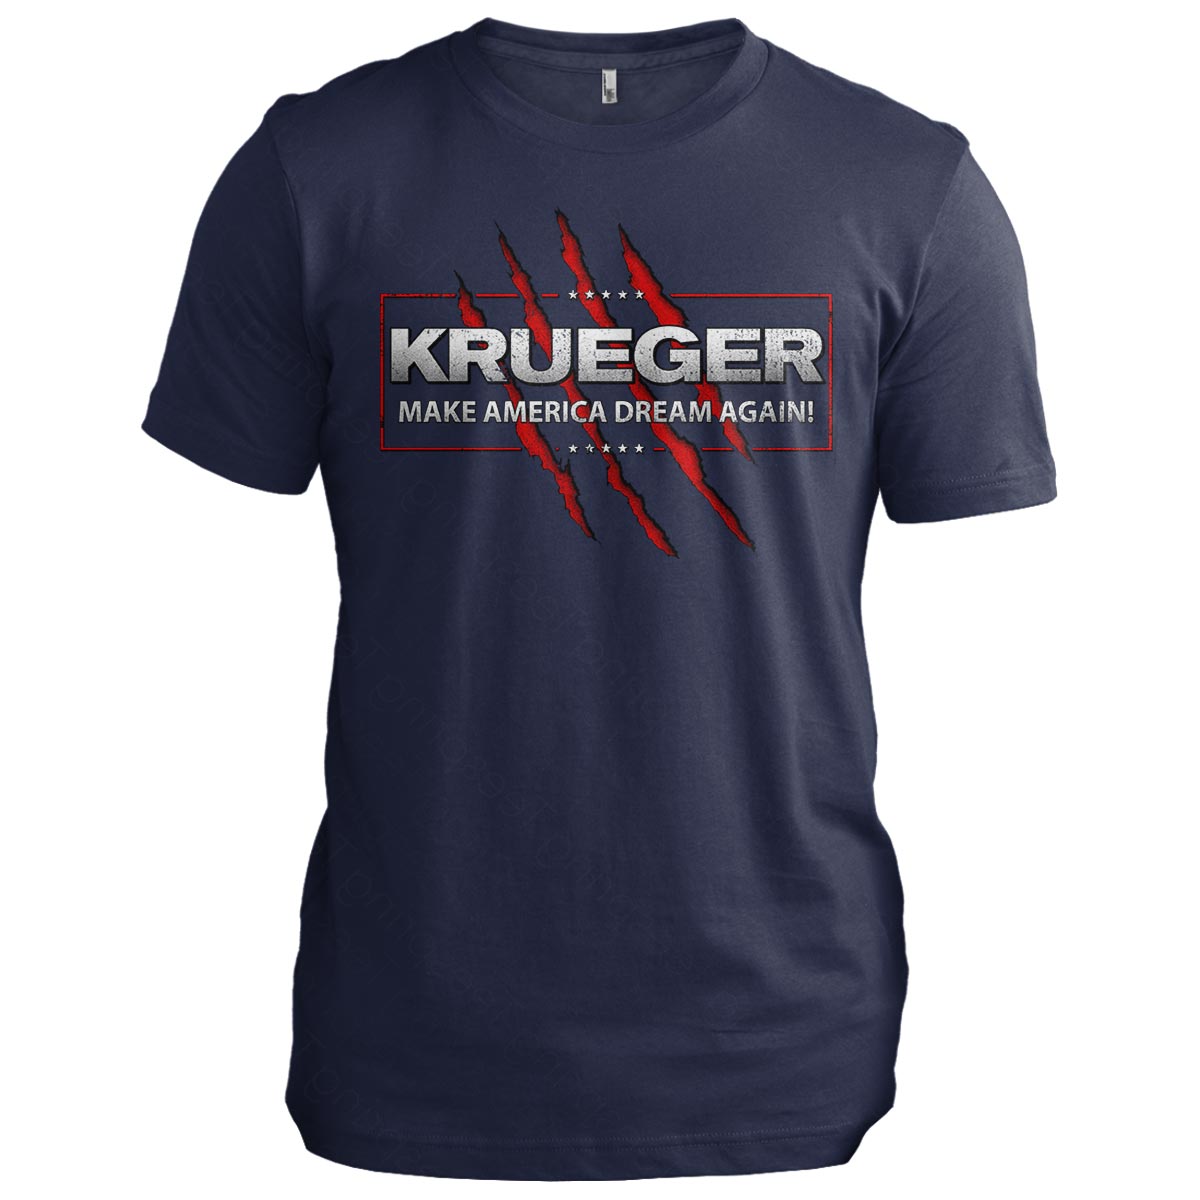 Krueger 2024: Make America Dream Again!